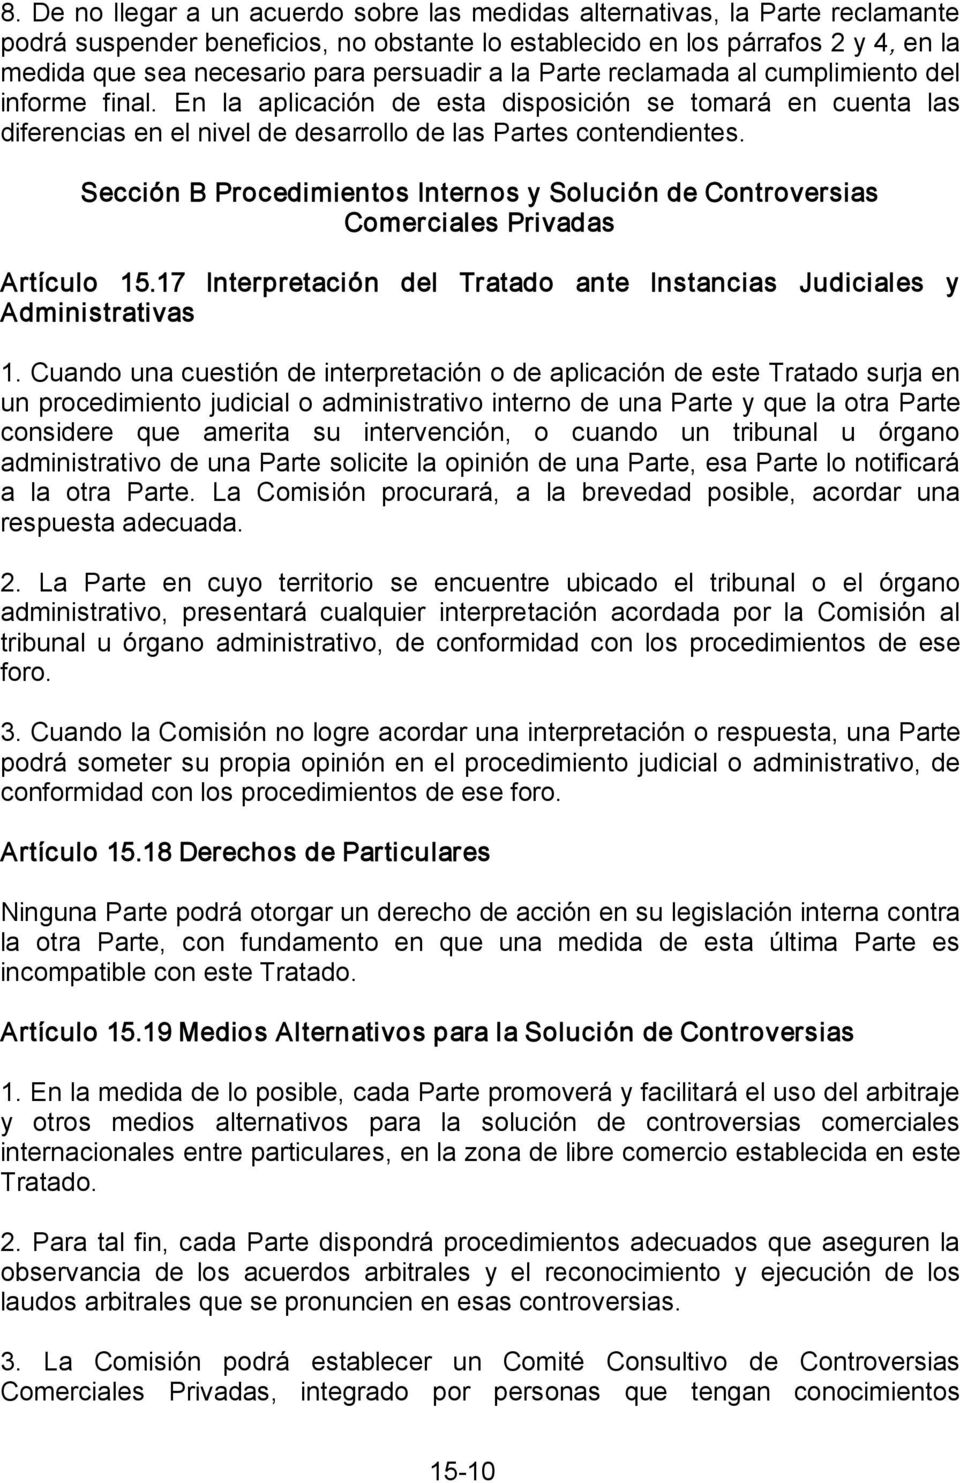 Sección B Procedimientos Internos y Solución de Controversias Comerciales Privadas Artículo 15.17 Interpretación del Tratado ante Instancias Judiciales y Administrativas 1.